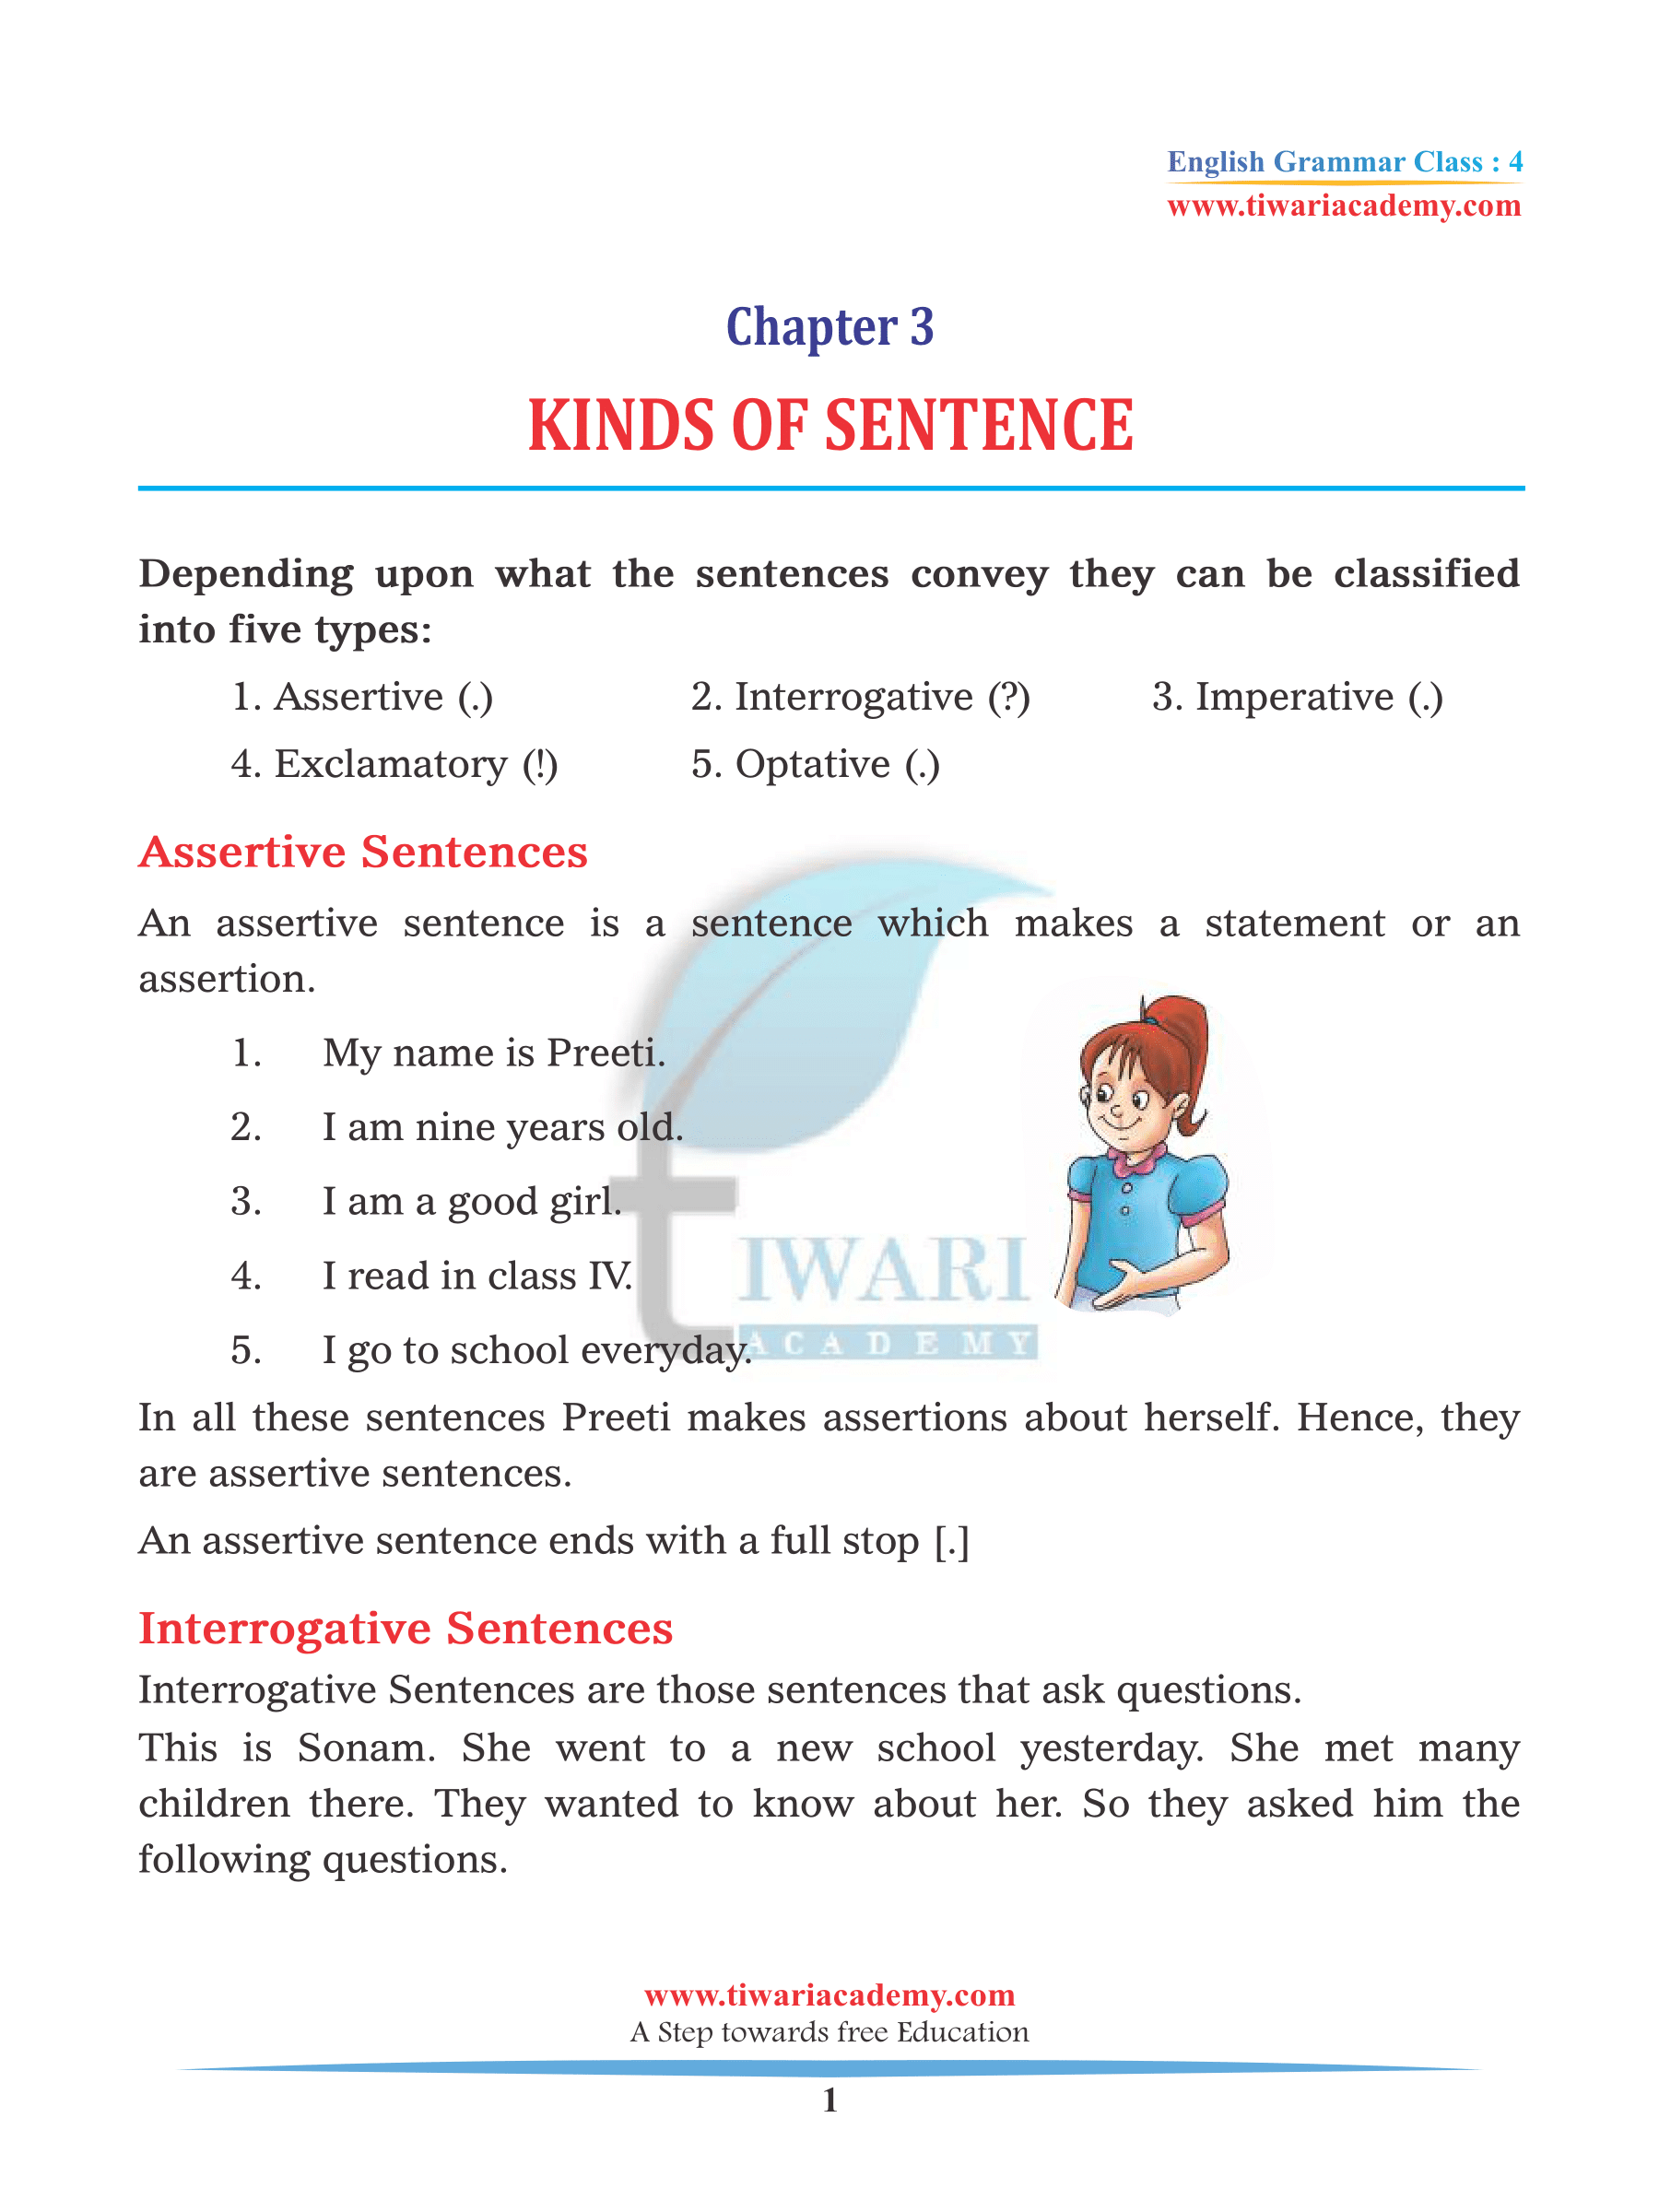 Class 4 English Grammar Chapter 3 Kinds of Sentence